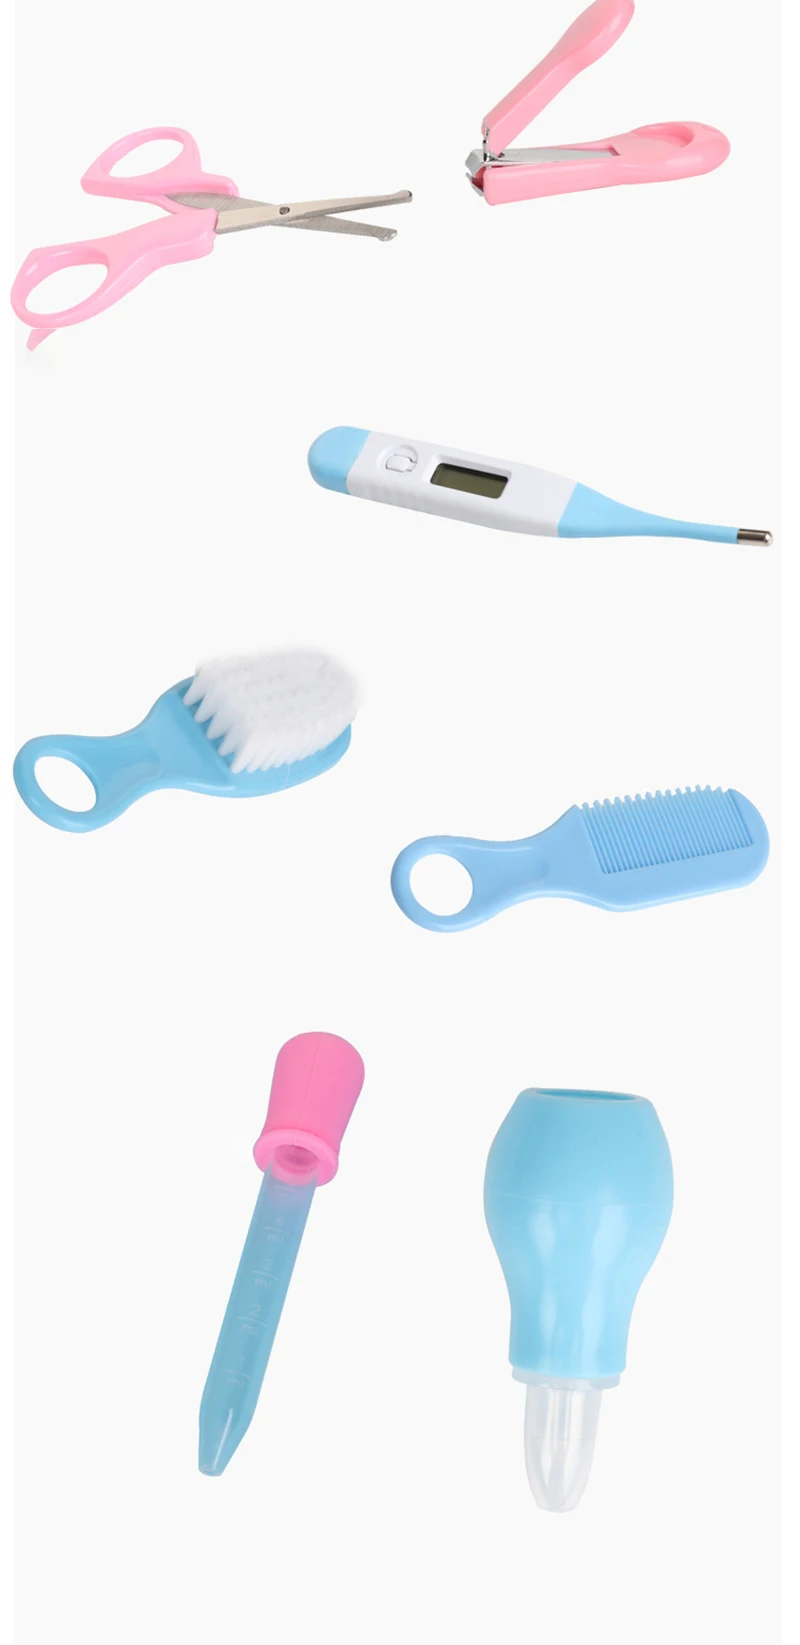 Детский набор для ухода за ногтями, набор для ухода за ногтями, расческа, ножницы для новорожденных детей, медицинские приборы, набор, термометр, безопасный детский набор